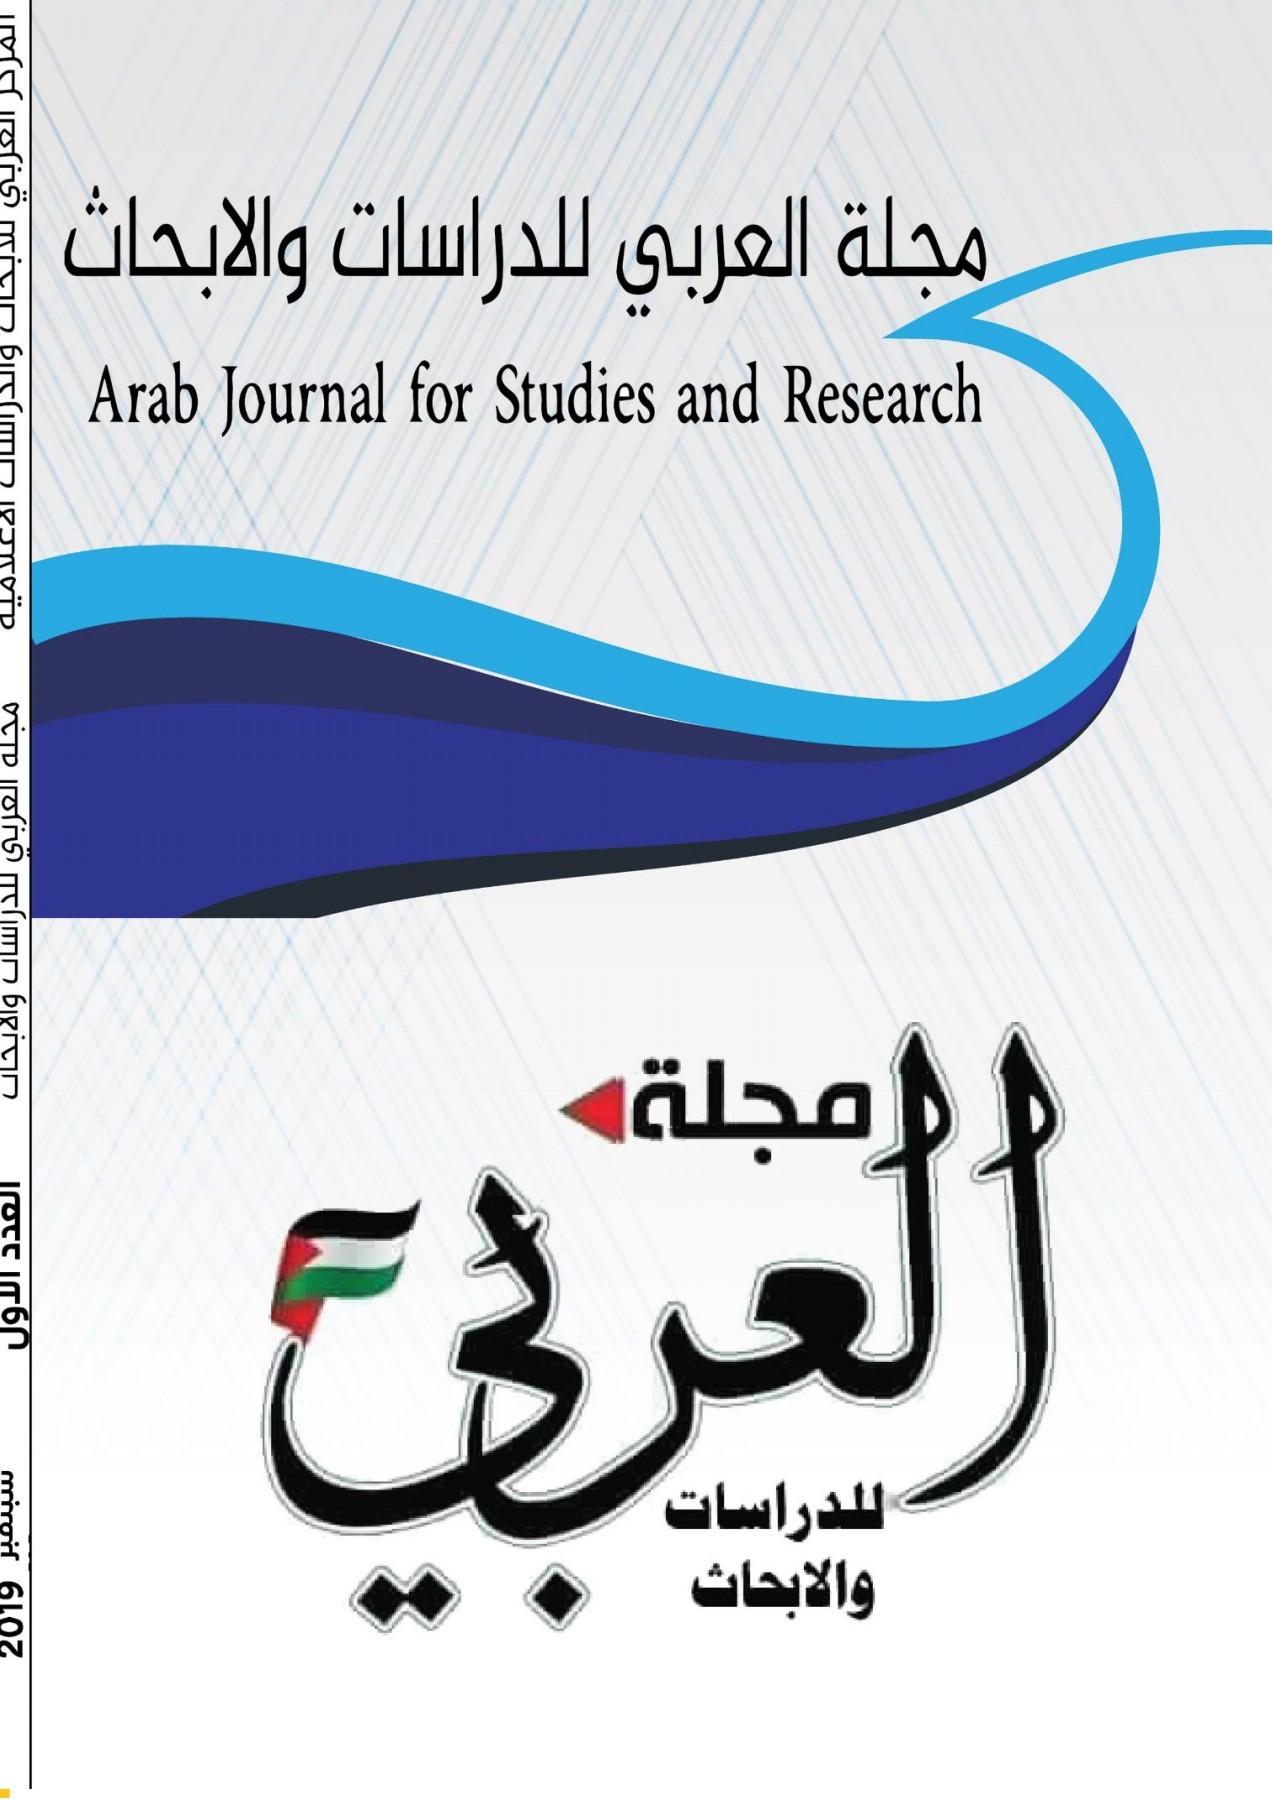 دعوة للكتابة في العدد الأول من مجلة العربي للدراسات والابحاث